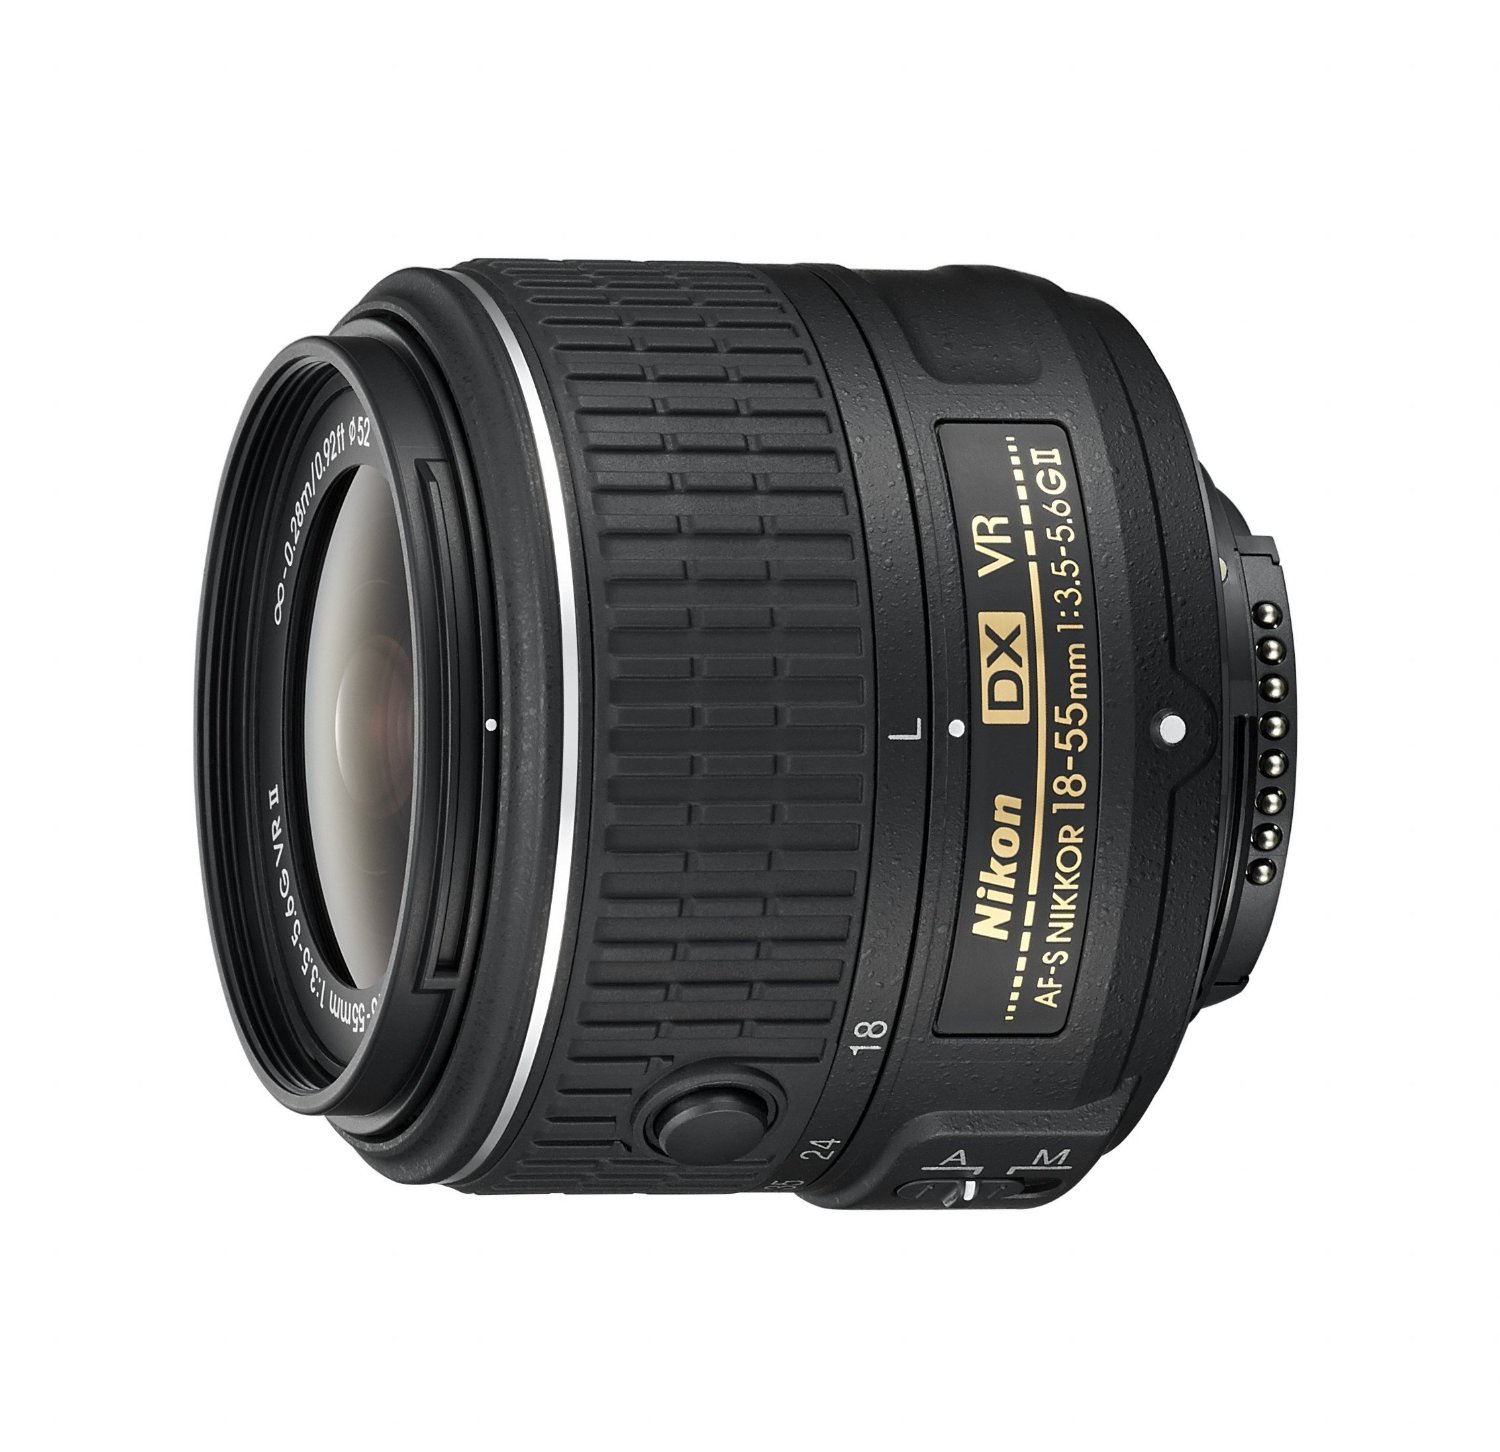 Nikon AF-S DX NIKKOR 18-55 mm f / 3.5-5.6G Lente con zoom II con reducción de vibraciones con enfoque automático para cámaras DSLR